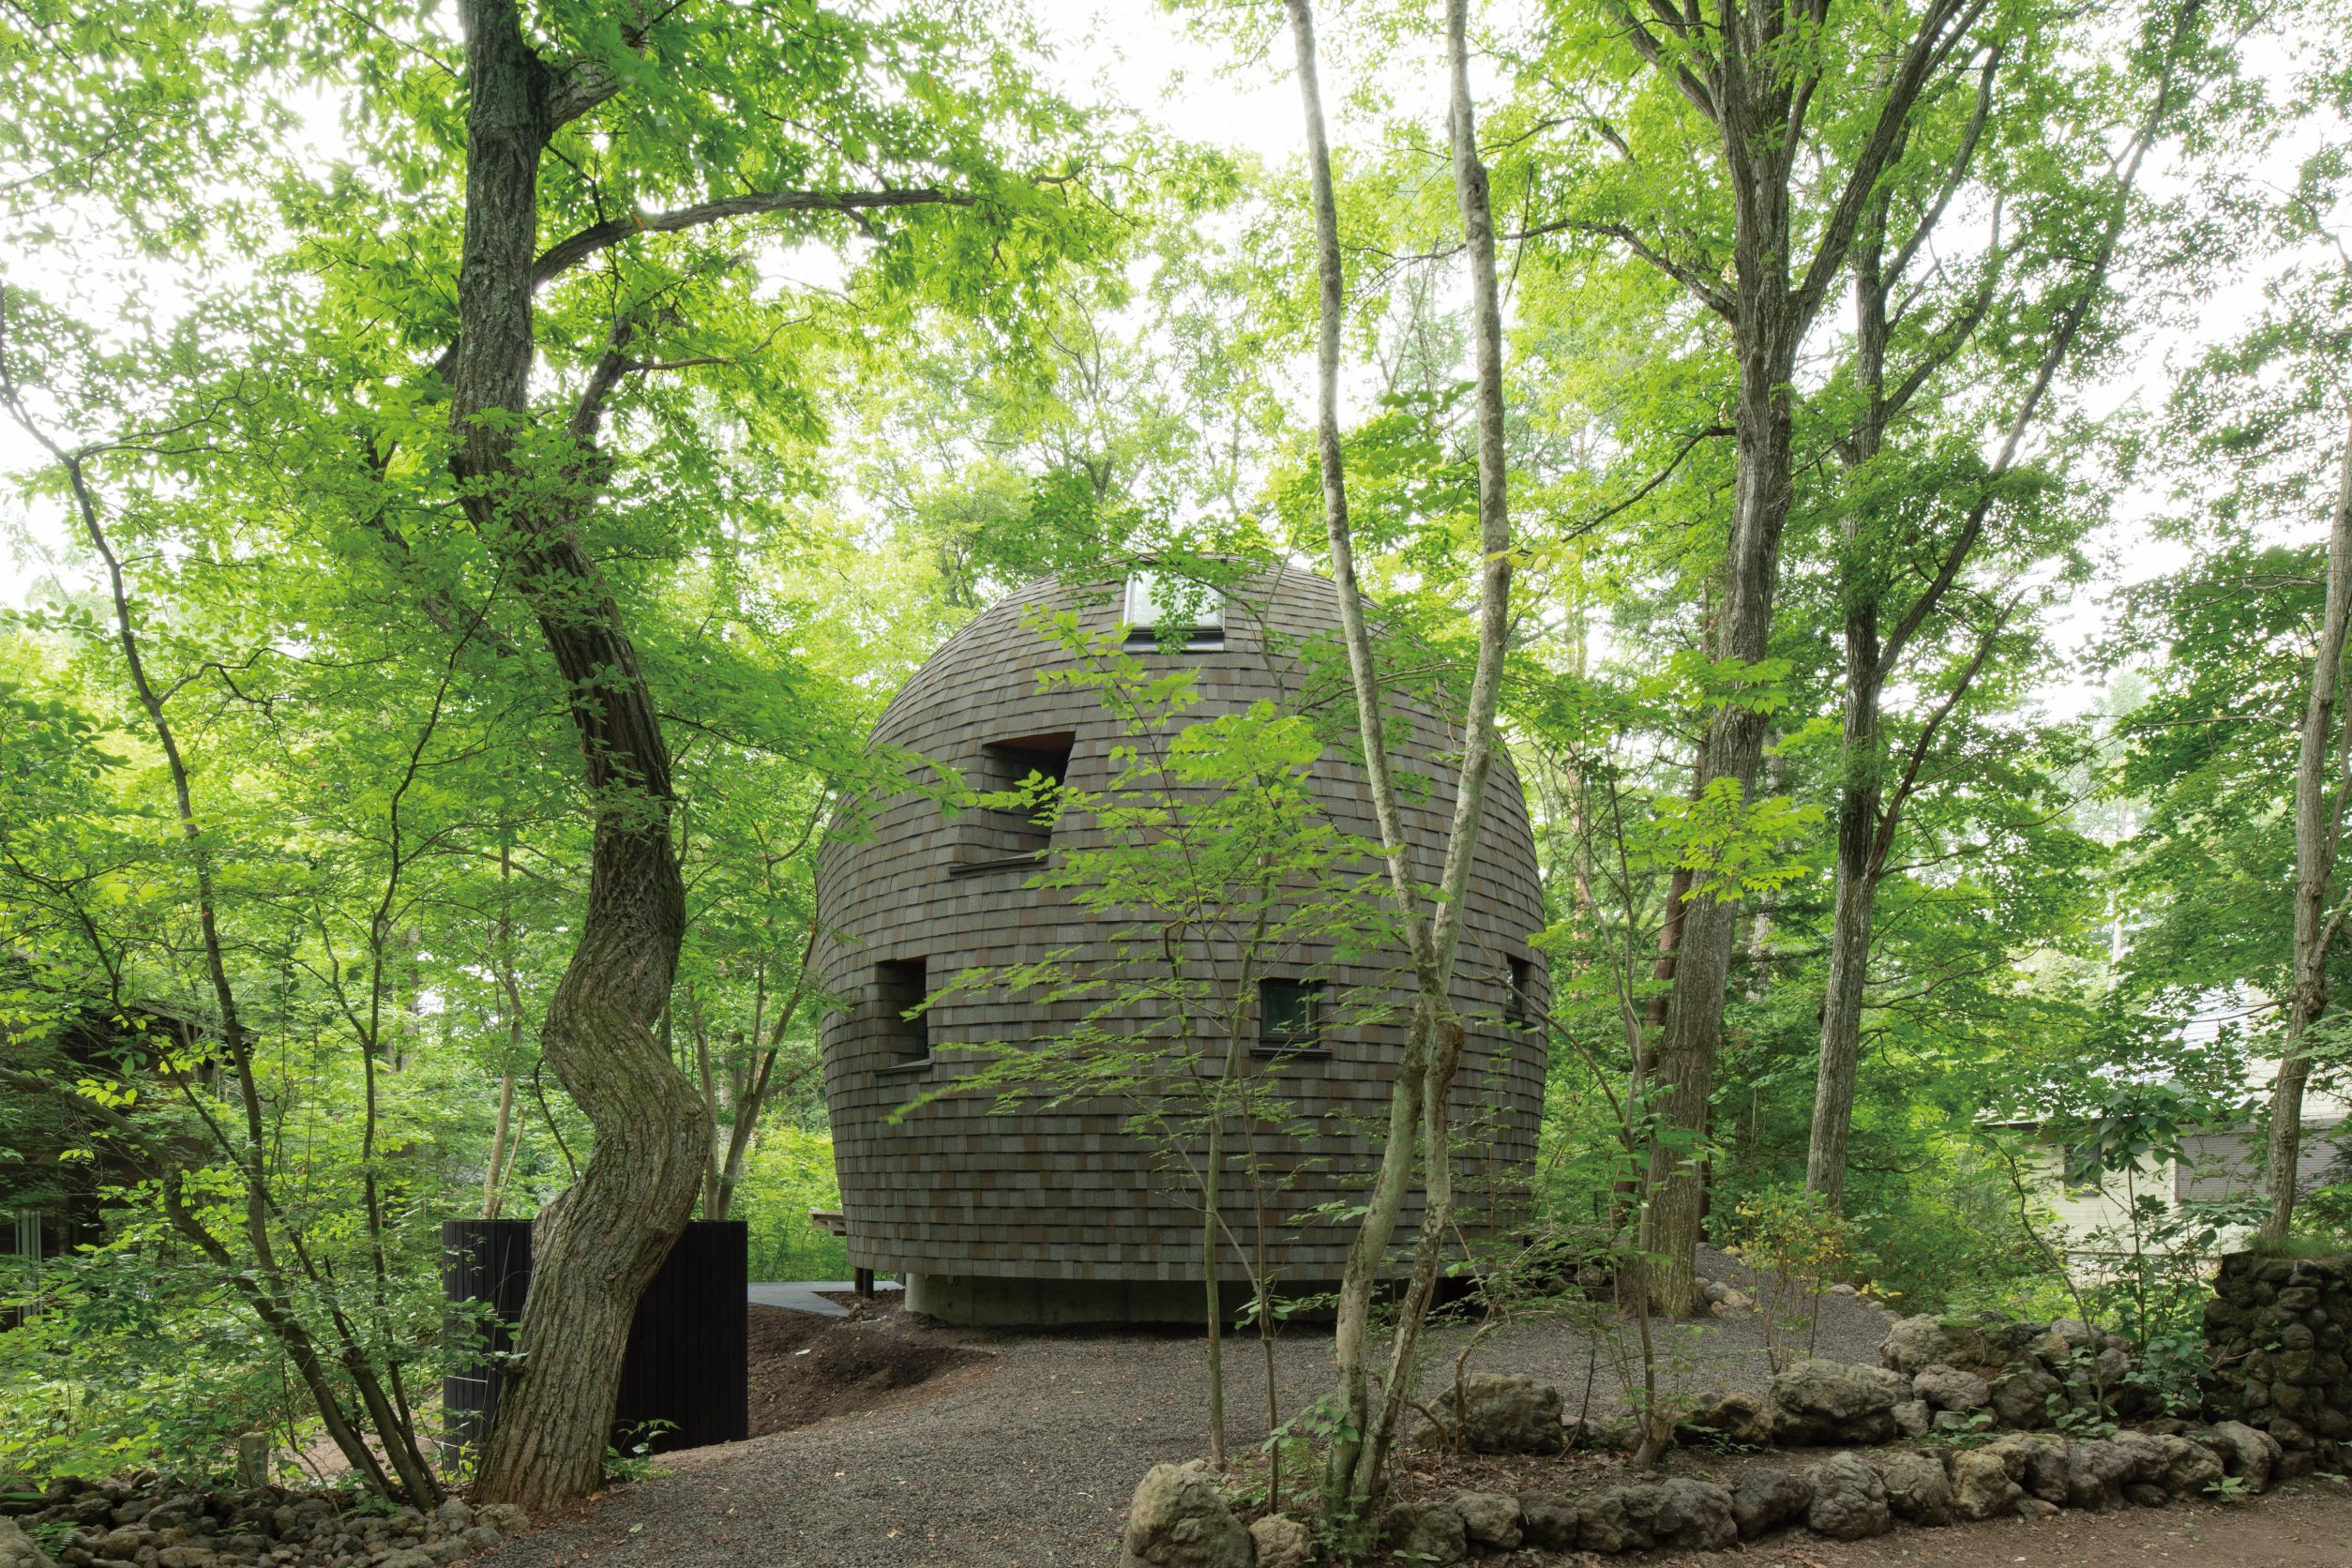 圆弧形的建筑体，搭配上调和自然色彩的木片外墙，让 Shell House 化身为森林里的童话建筑。